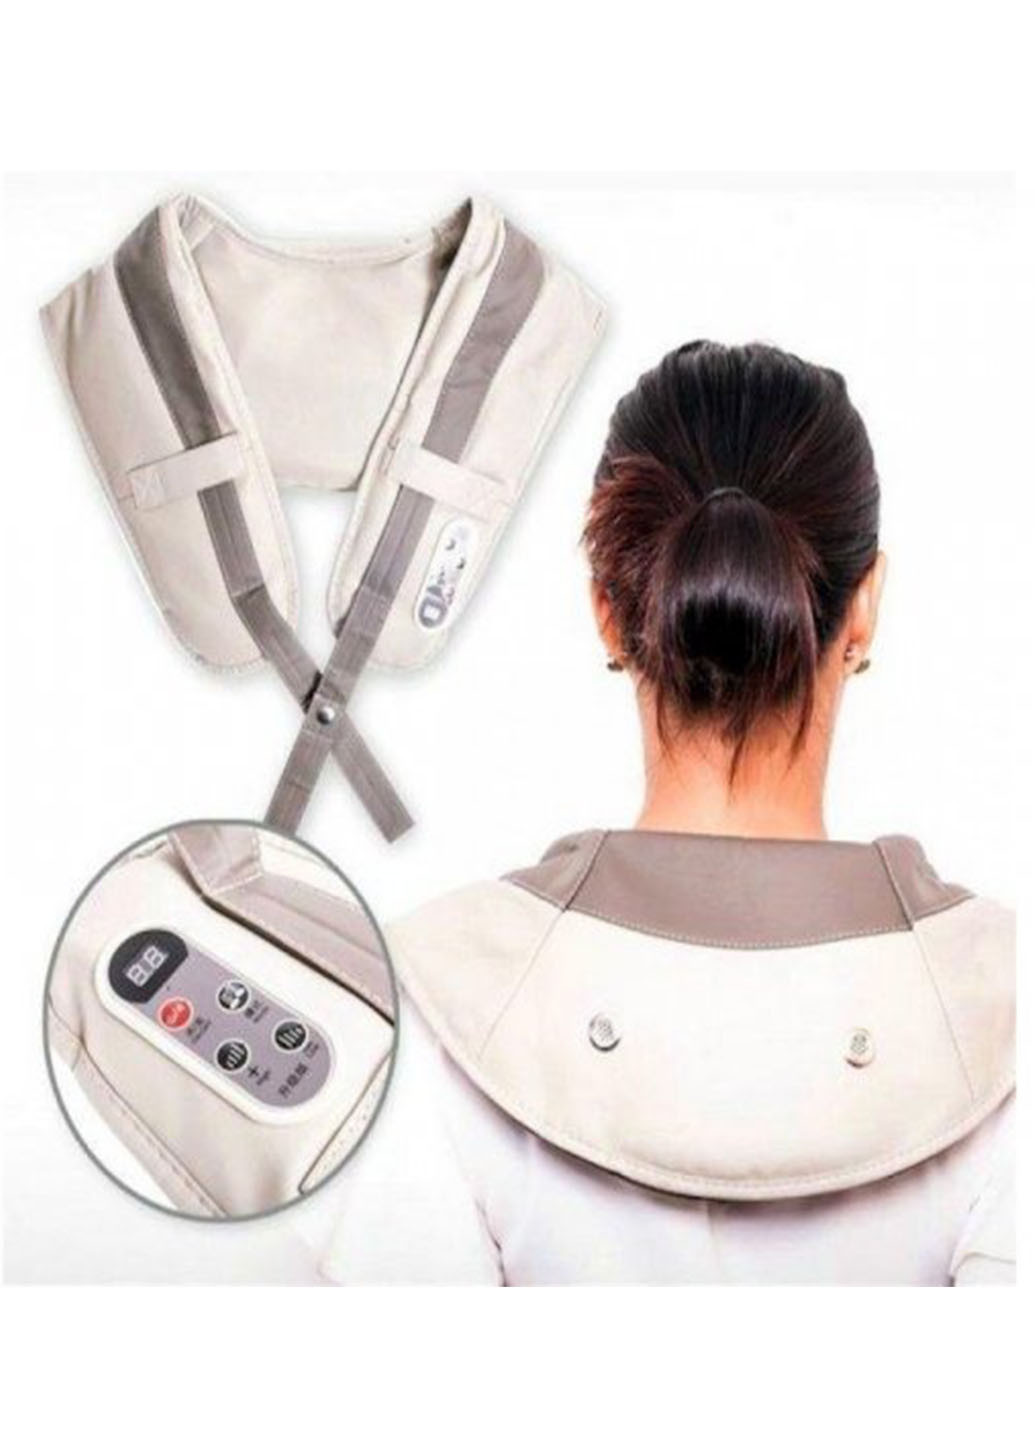 Вибромассажер ударный для тела Cervical Massage Shawls массажер для спины, шеи и поясницы Good Idea (270000297)